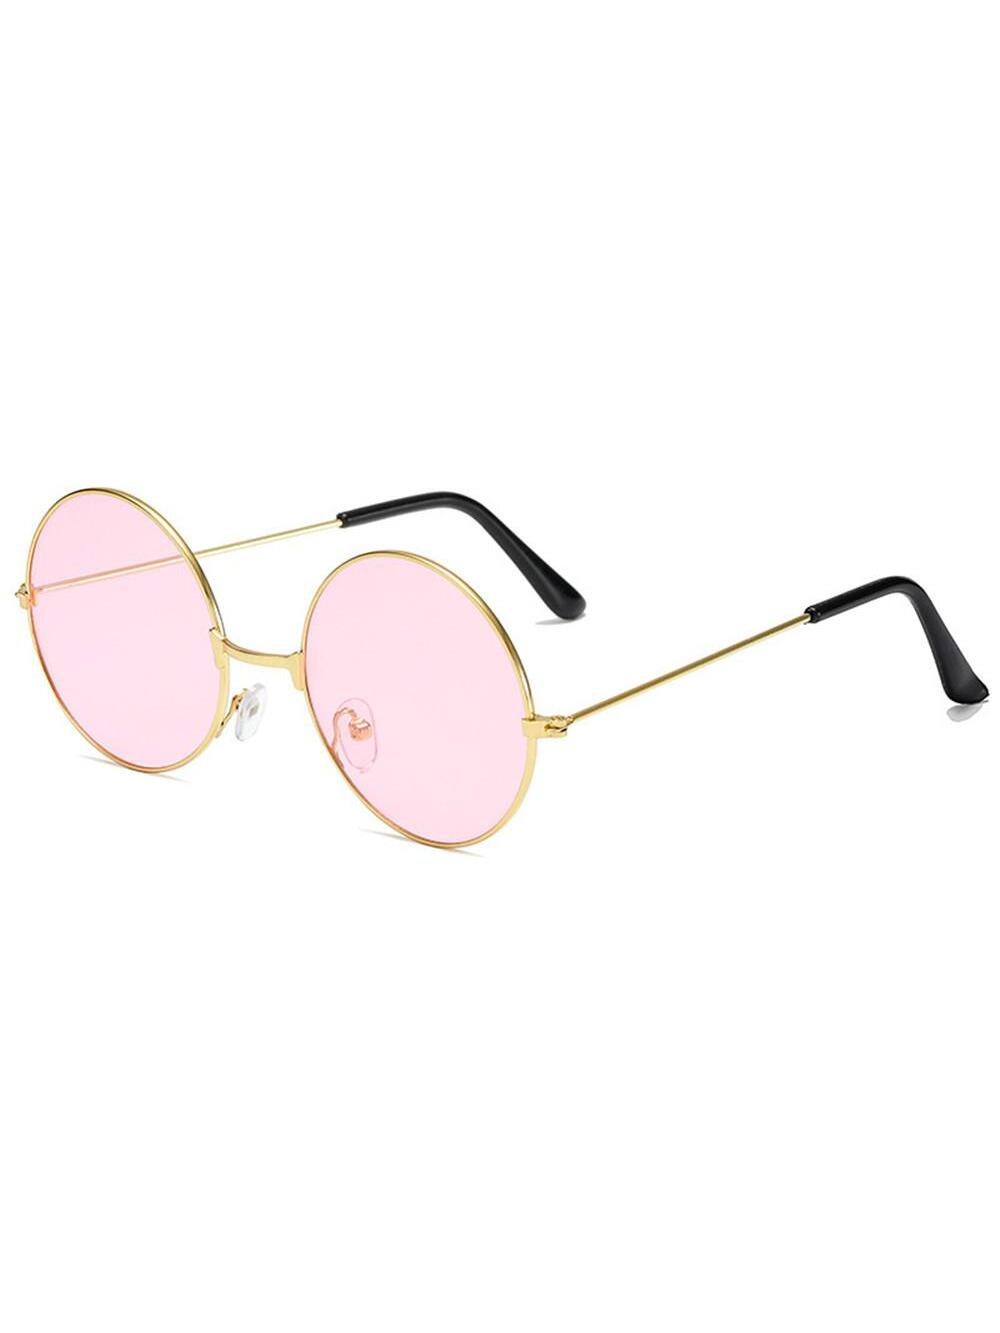 солнцезащитные очки timberland круглые для мужчин Ретро круглые солнцезащитные очки в стиле хиппи, розовый